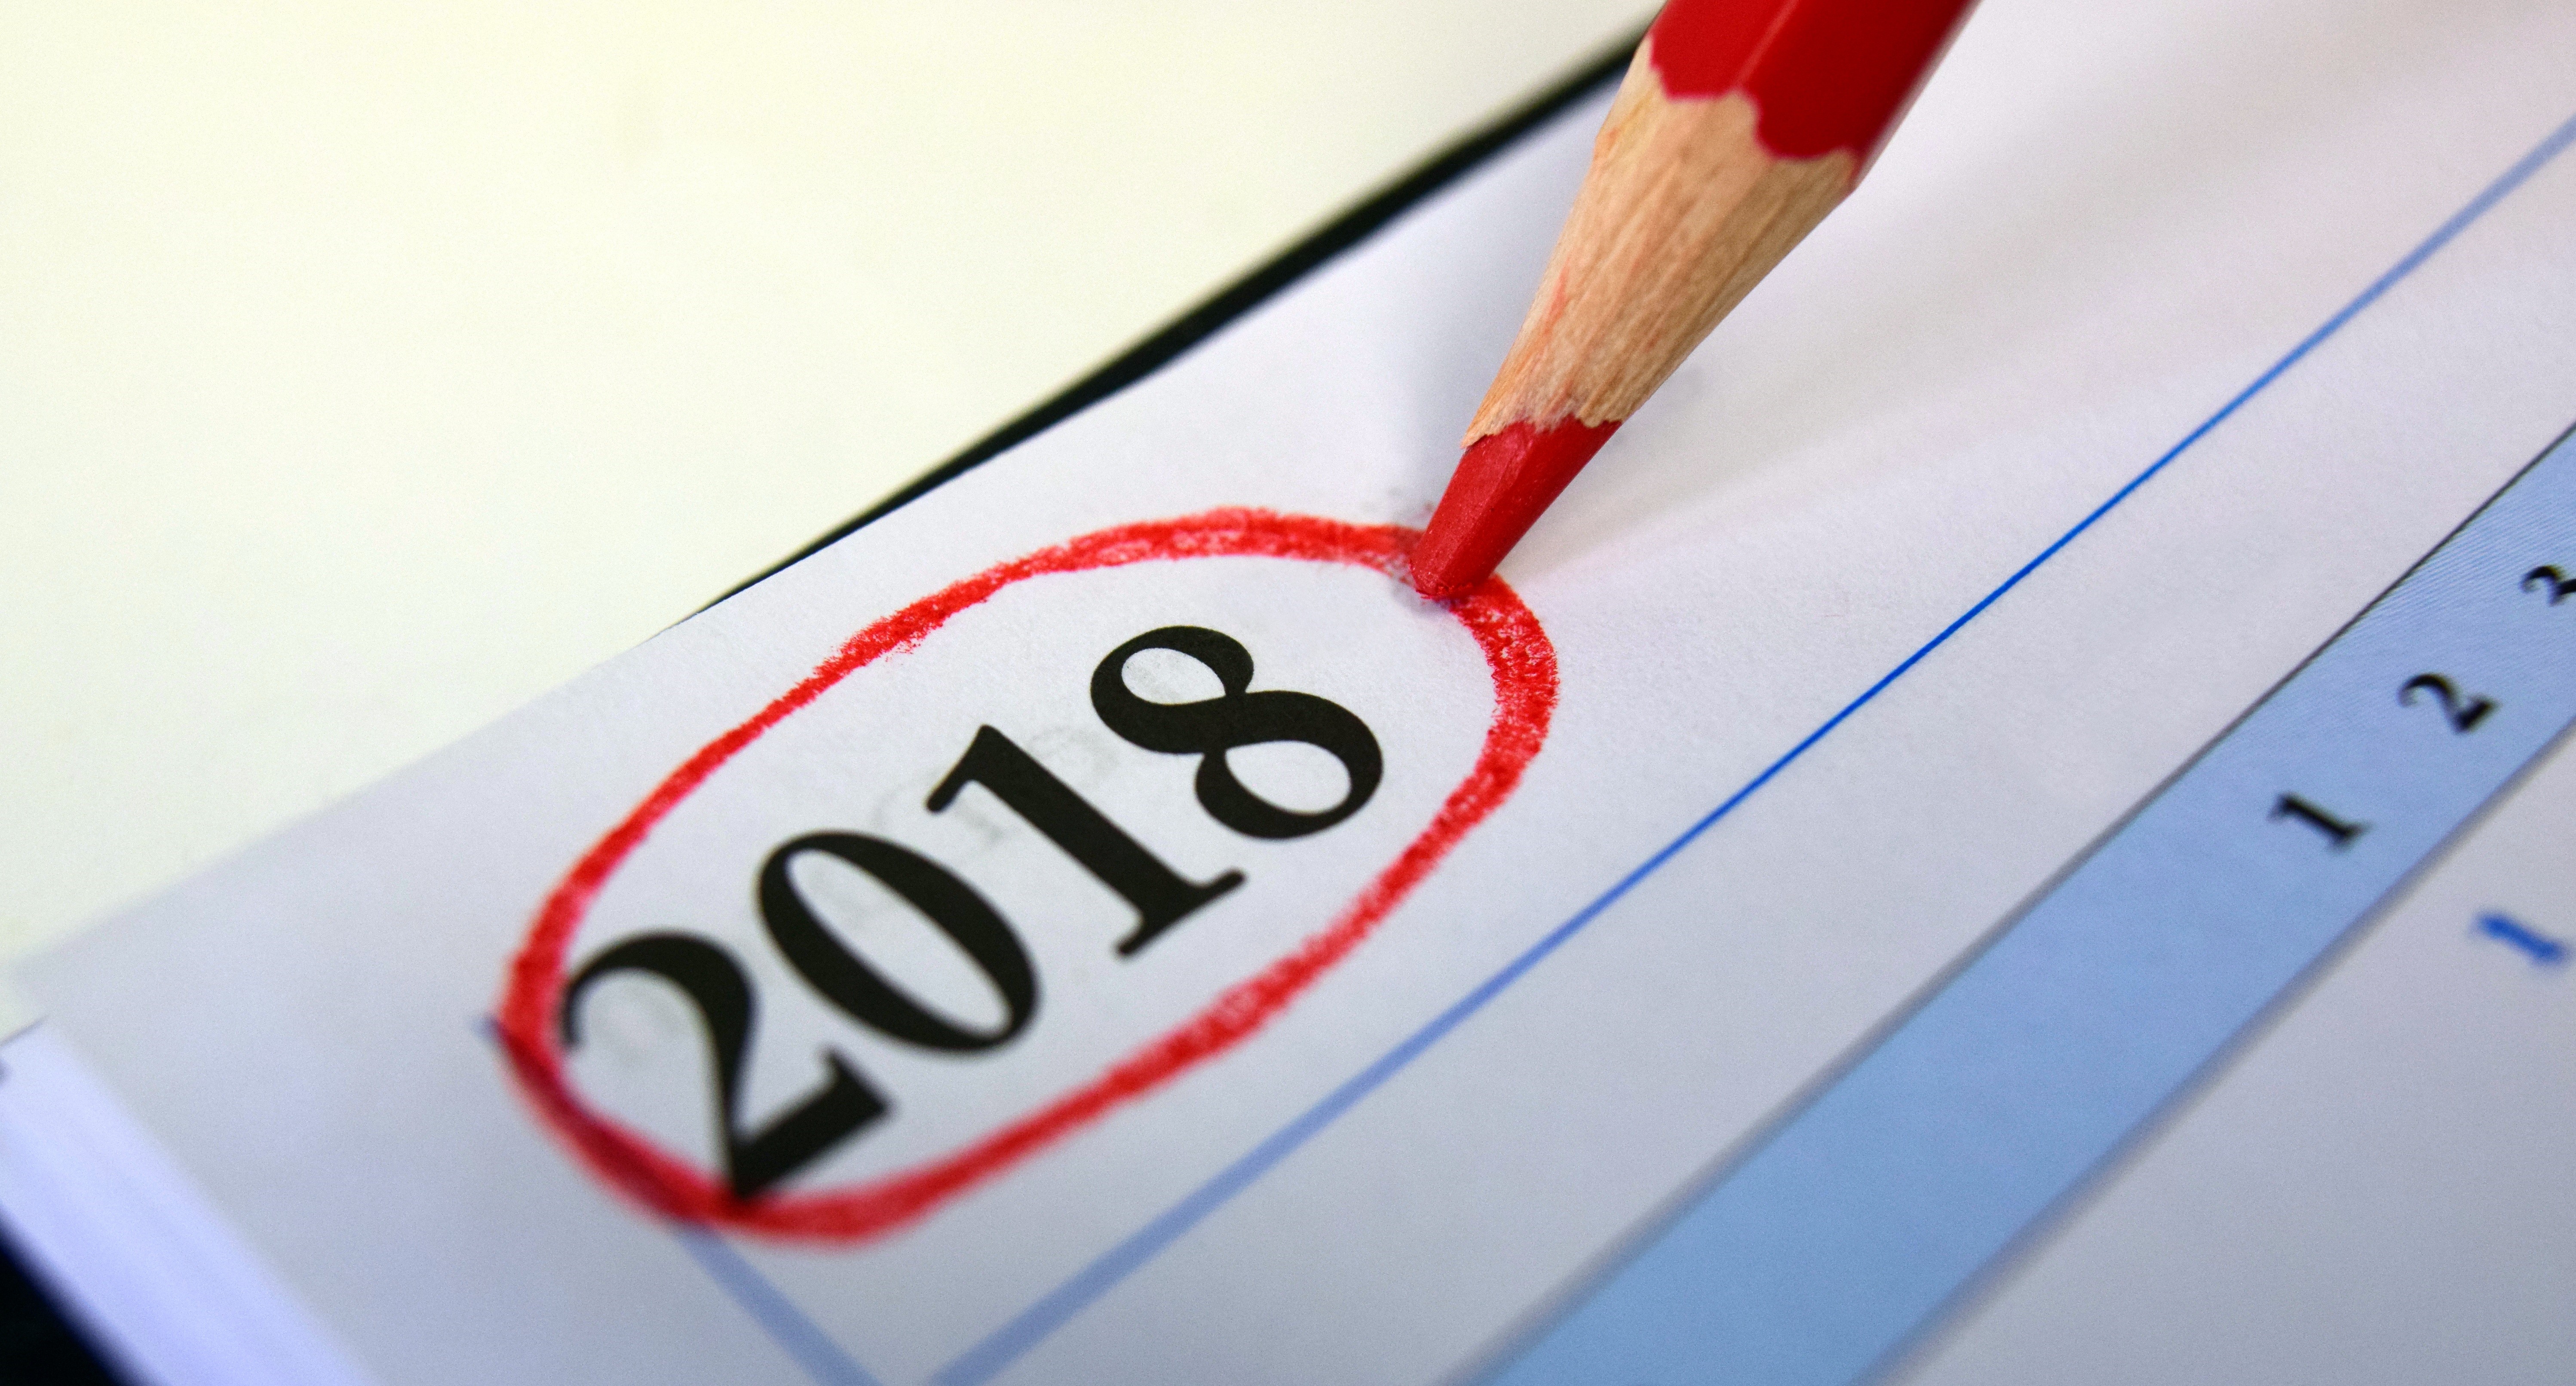 Heeft ù de 2018 nieuwjaarskalender al? Wij trakteren op de inhoud!